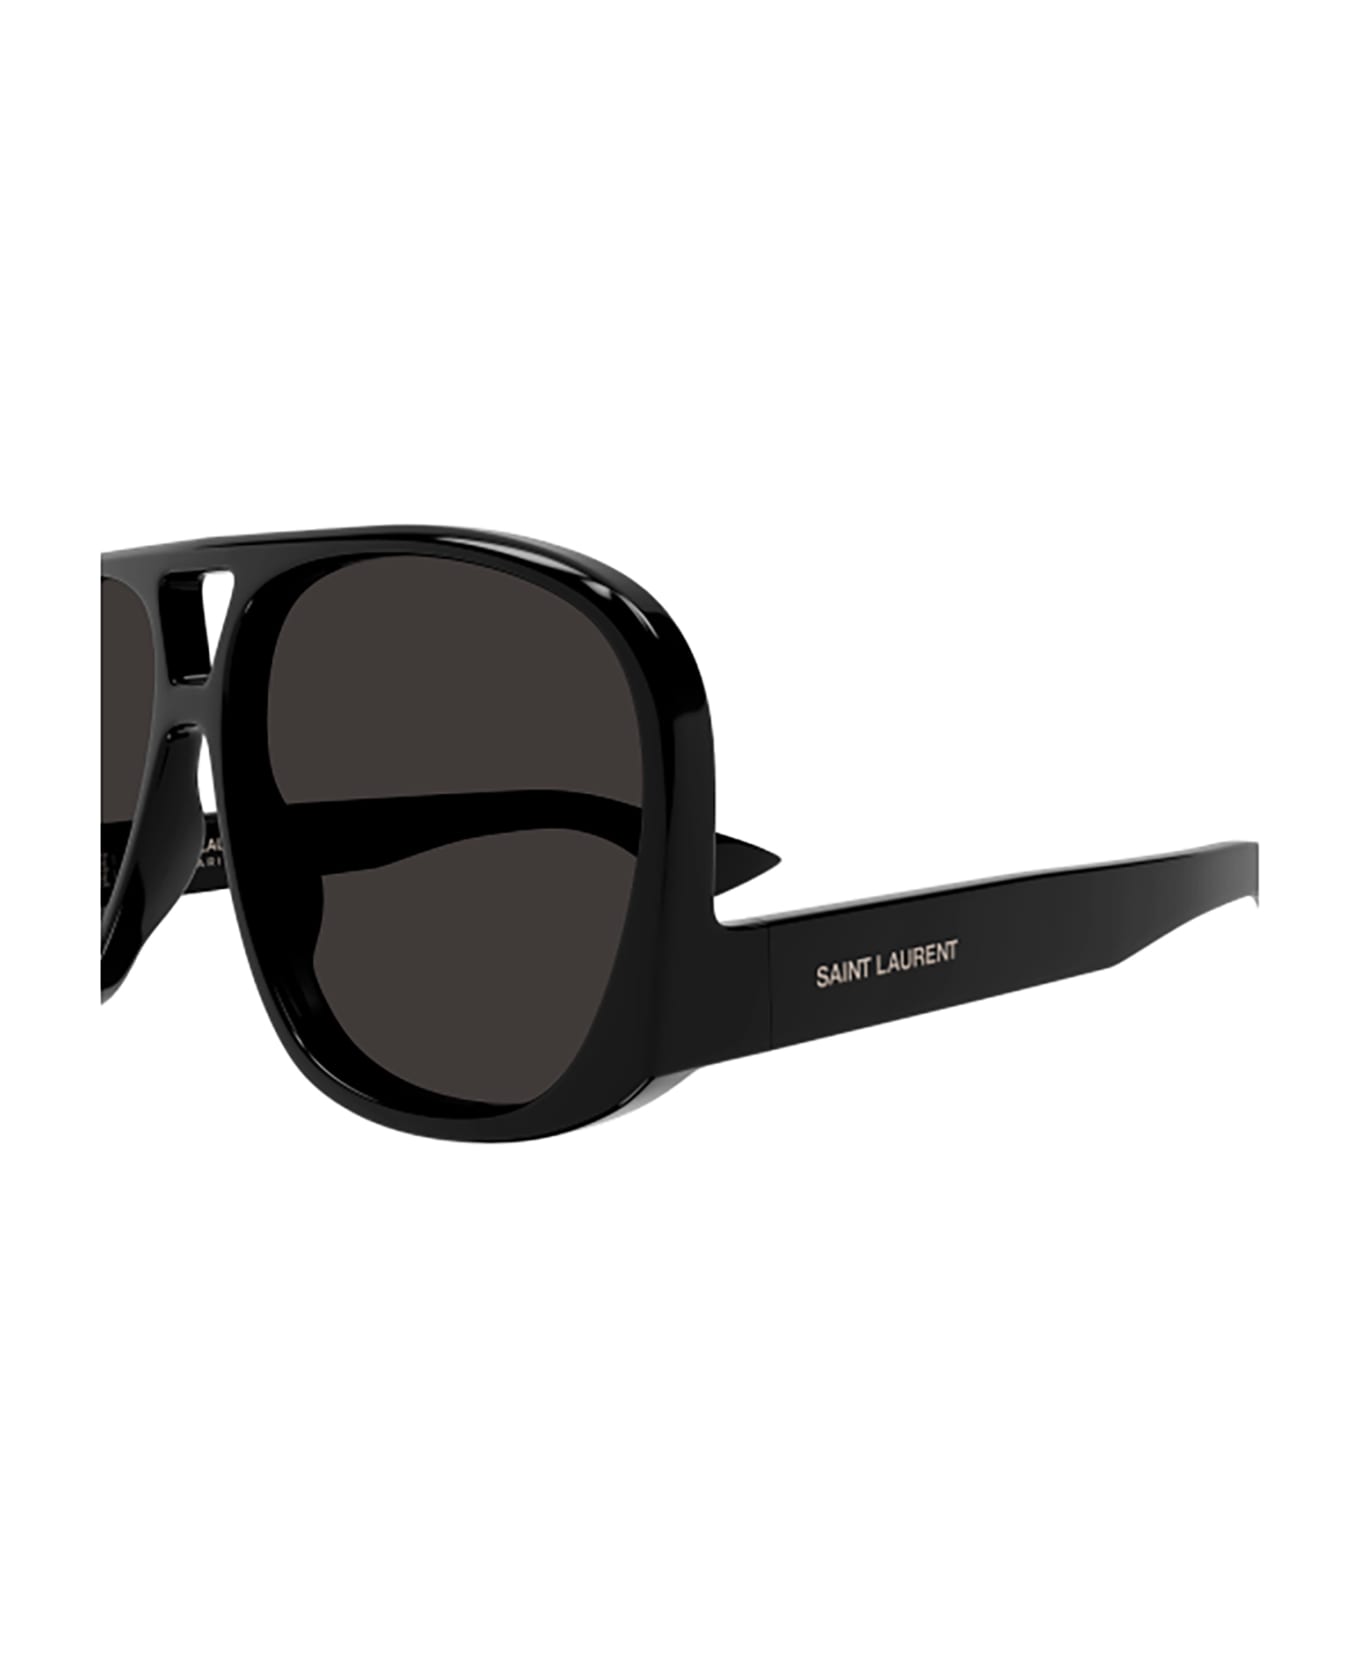 Saint Laurent Eyewear Sl 652 Solace Sunglasses - 001 black black black サングラス